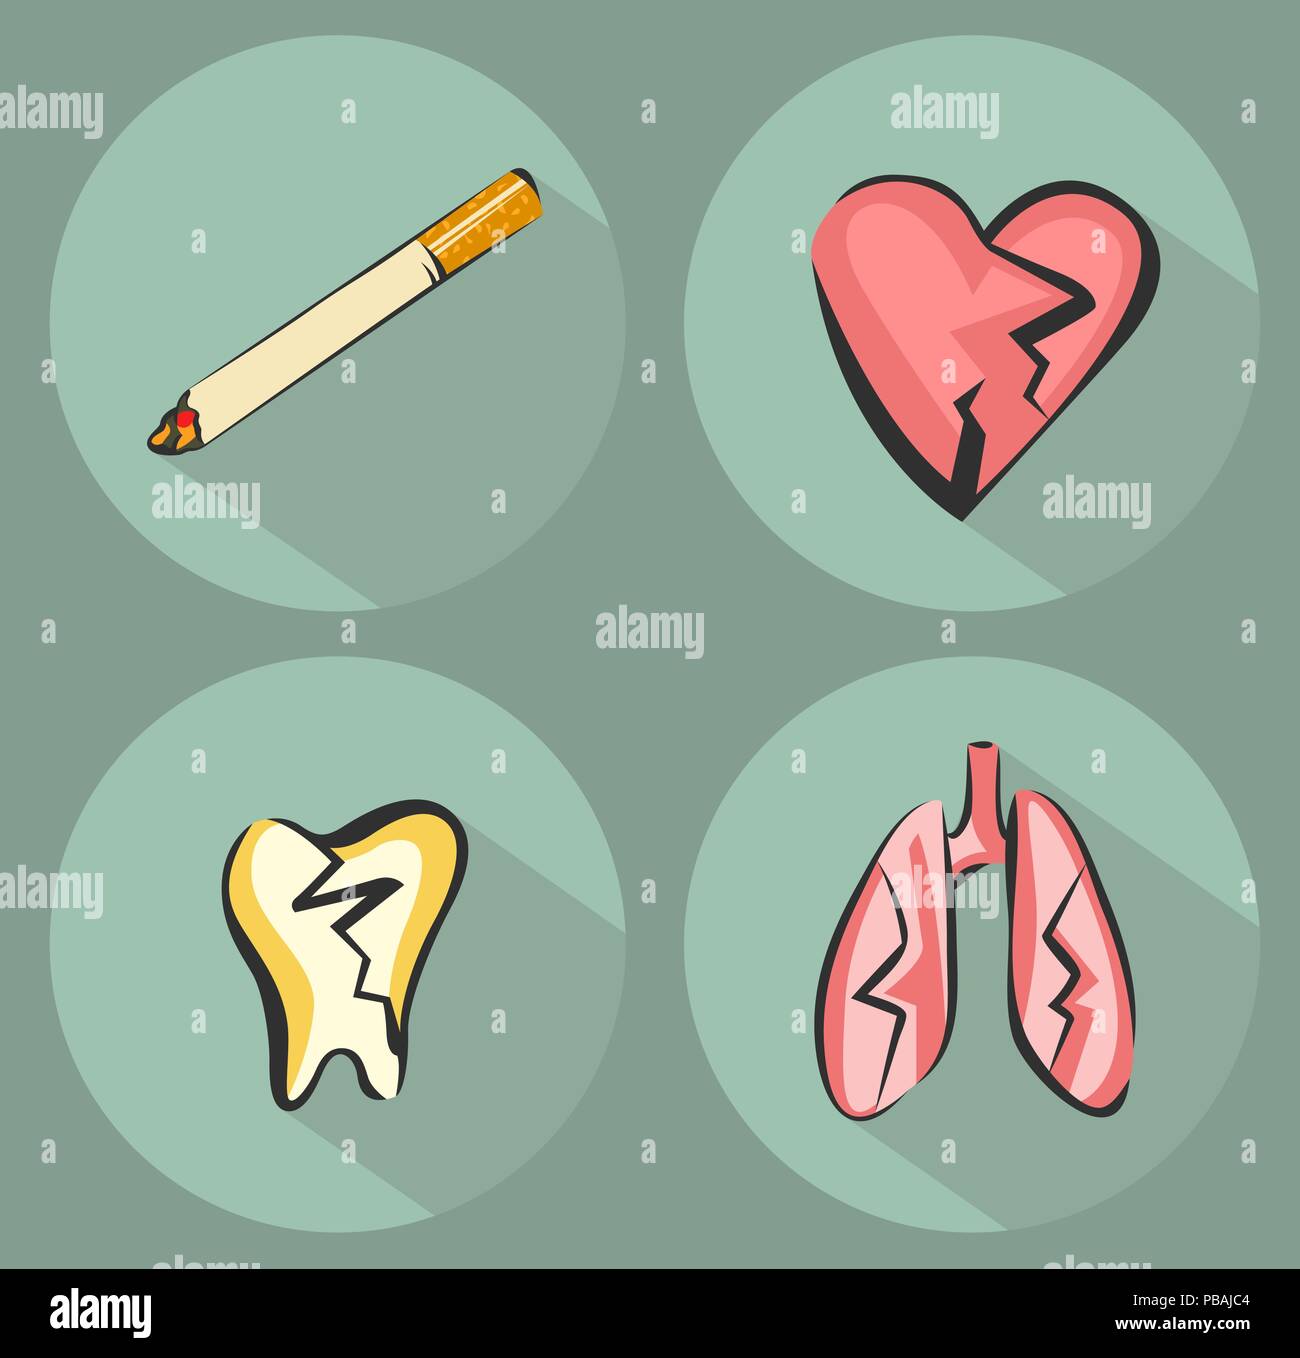 Rauchen schadet Symbole und Zigarette Symbol. Leiden Herz, Lunge und Zahn. Vektorgrafiken in retro Moderne style Set Stock Vektor